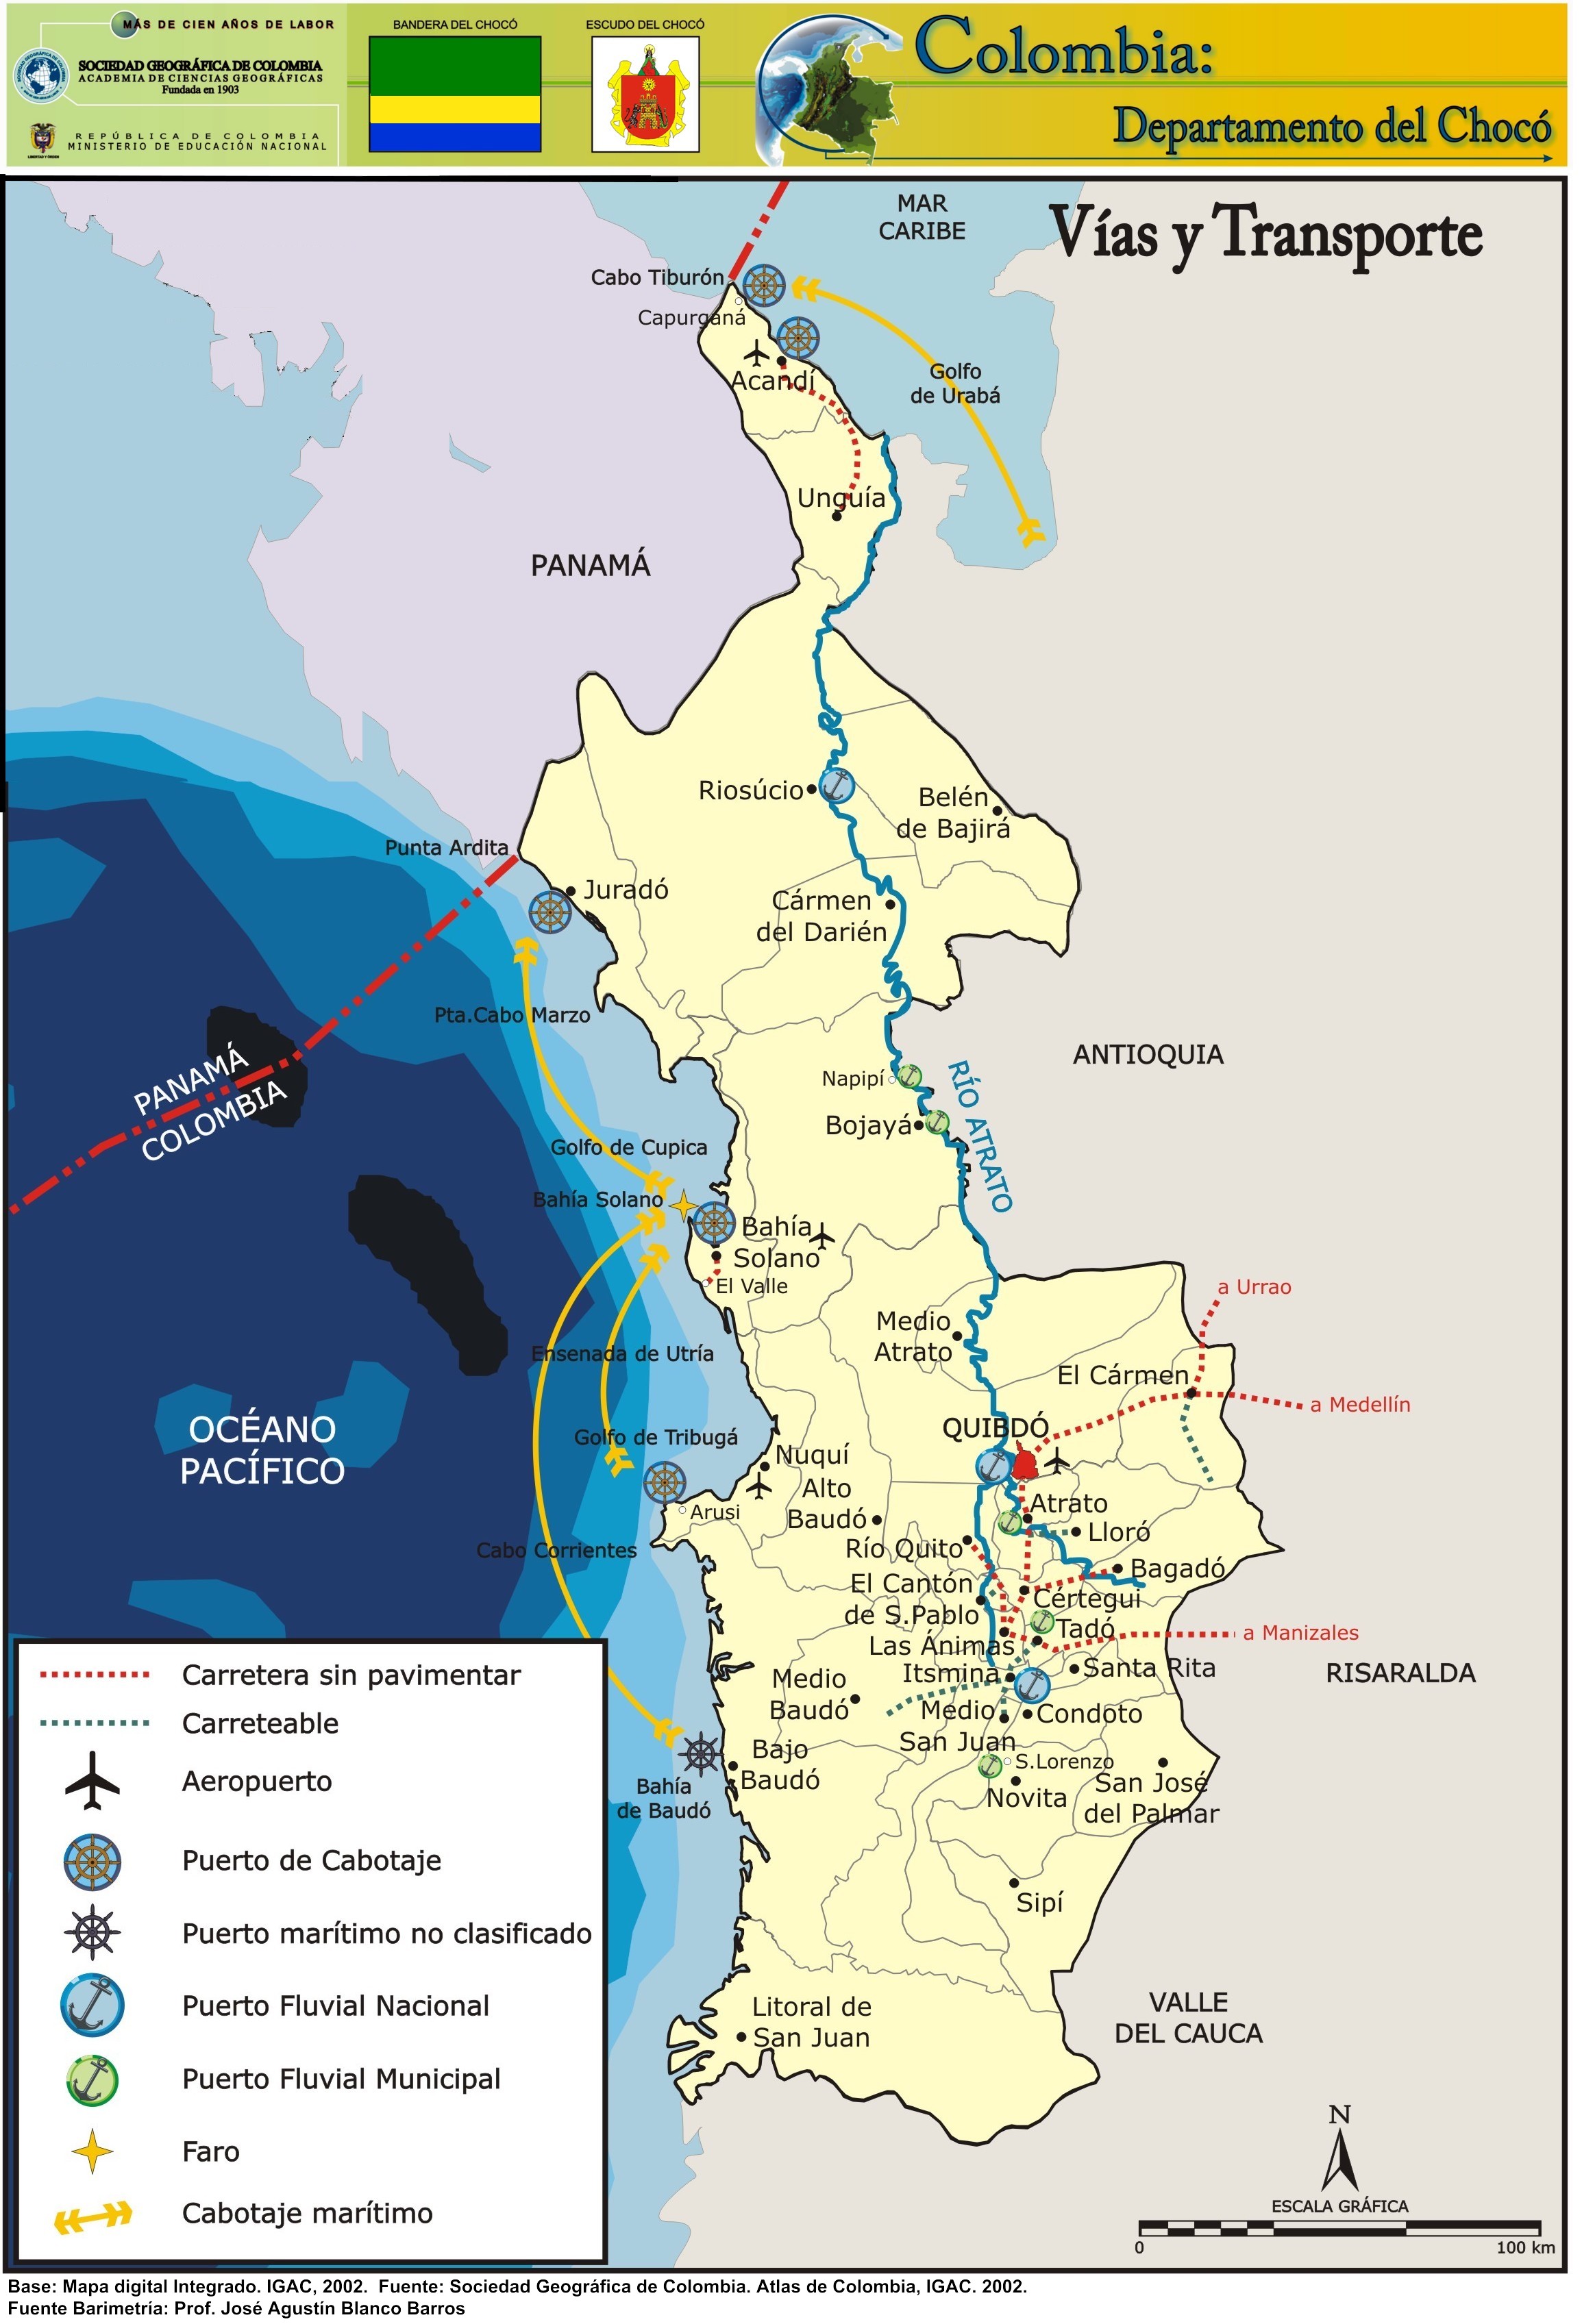 El Chocó - Región del Pacífico, Colombia ✈️ Foro América del Sur